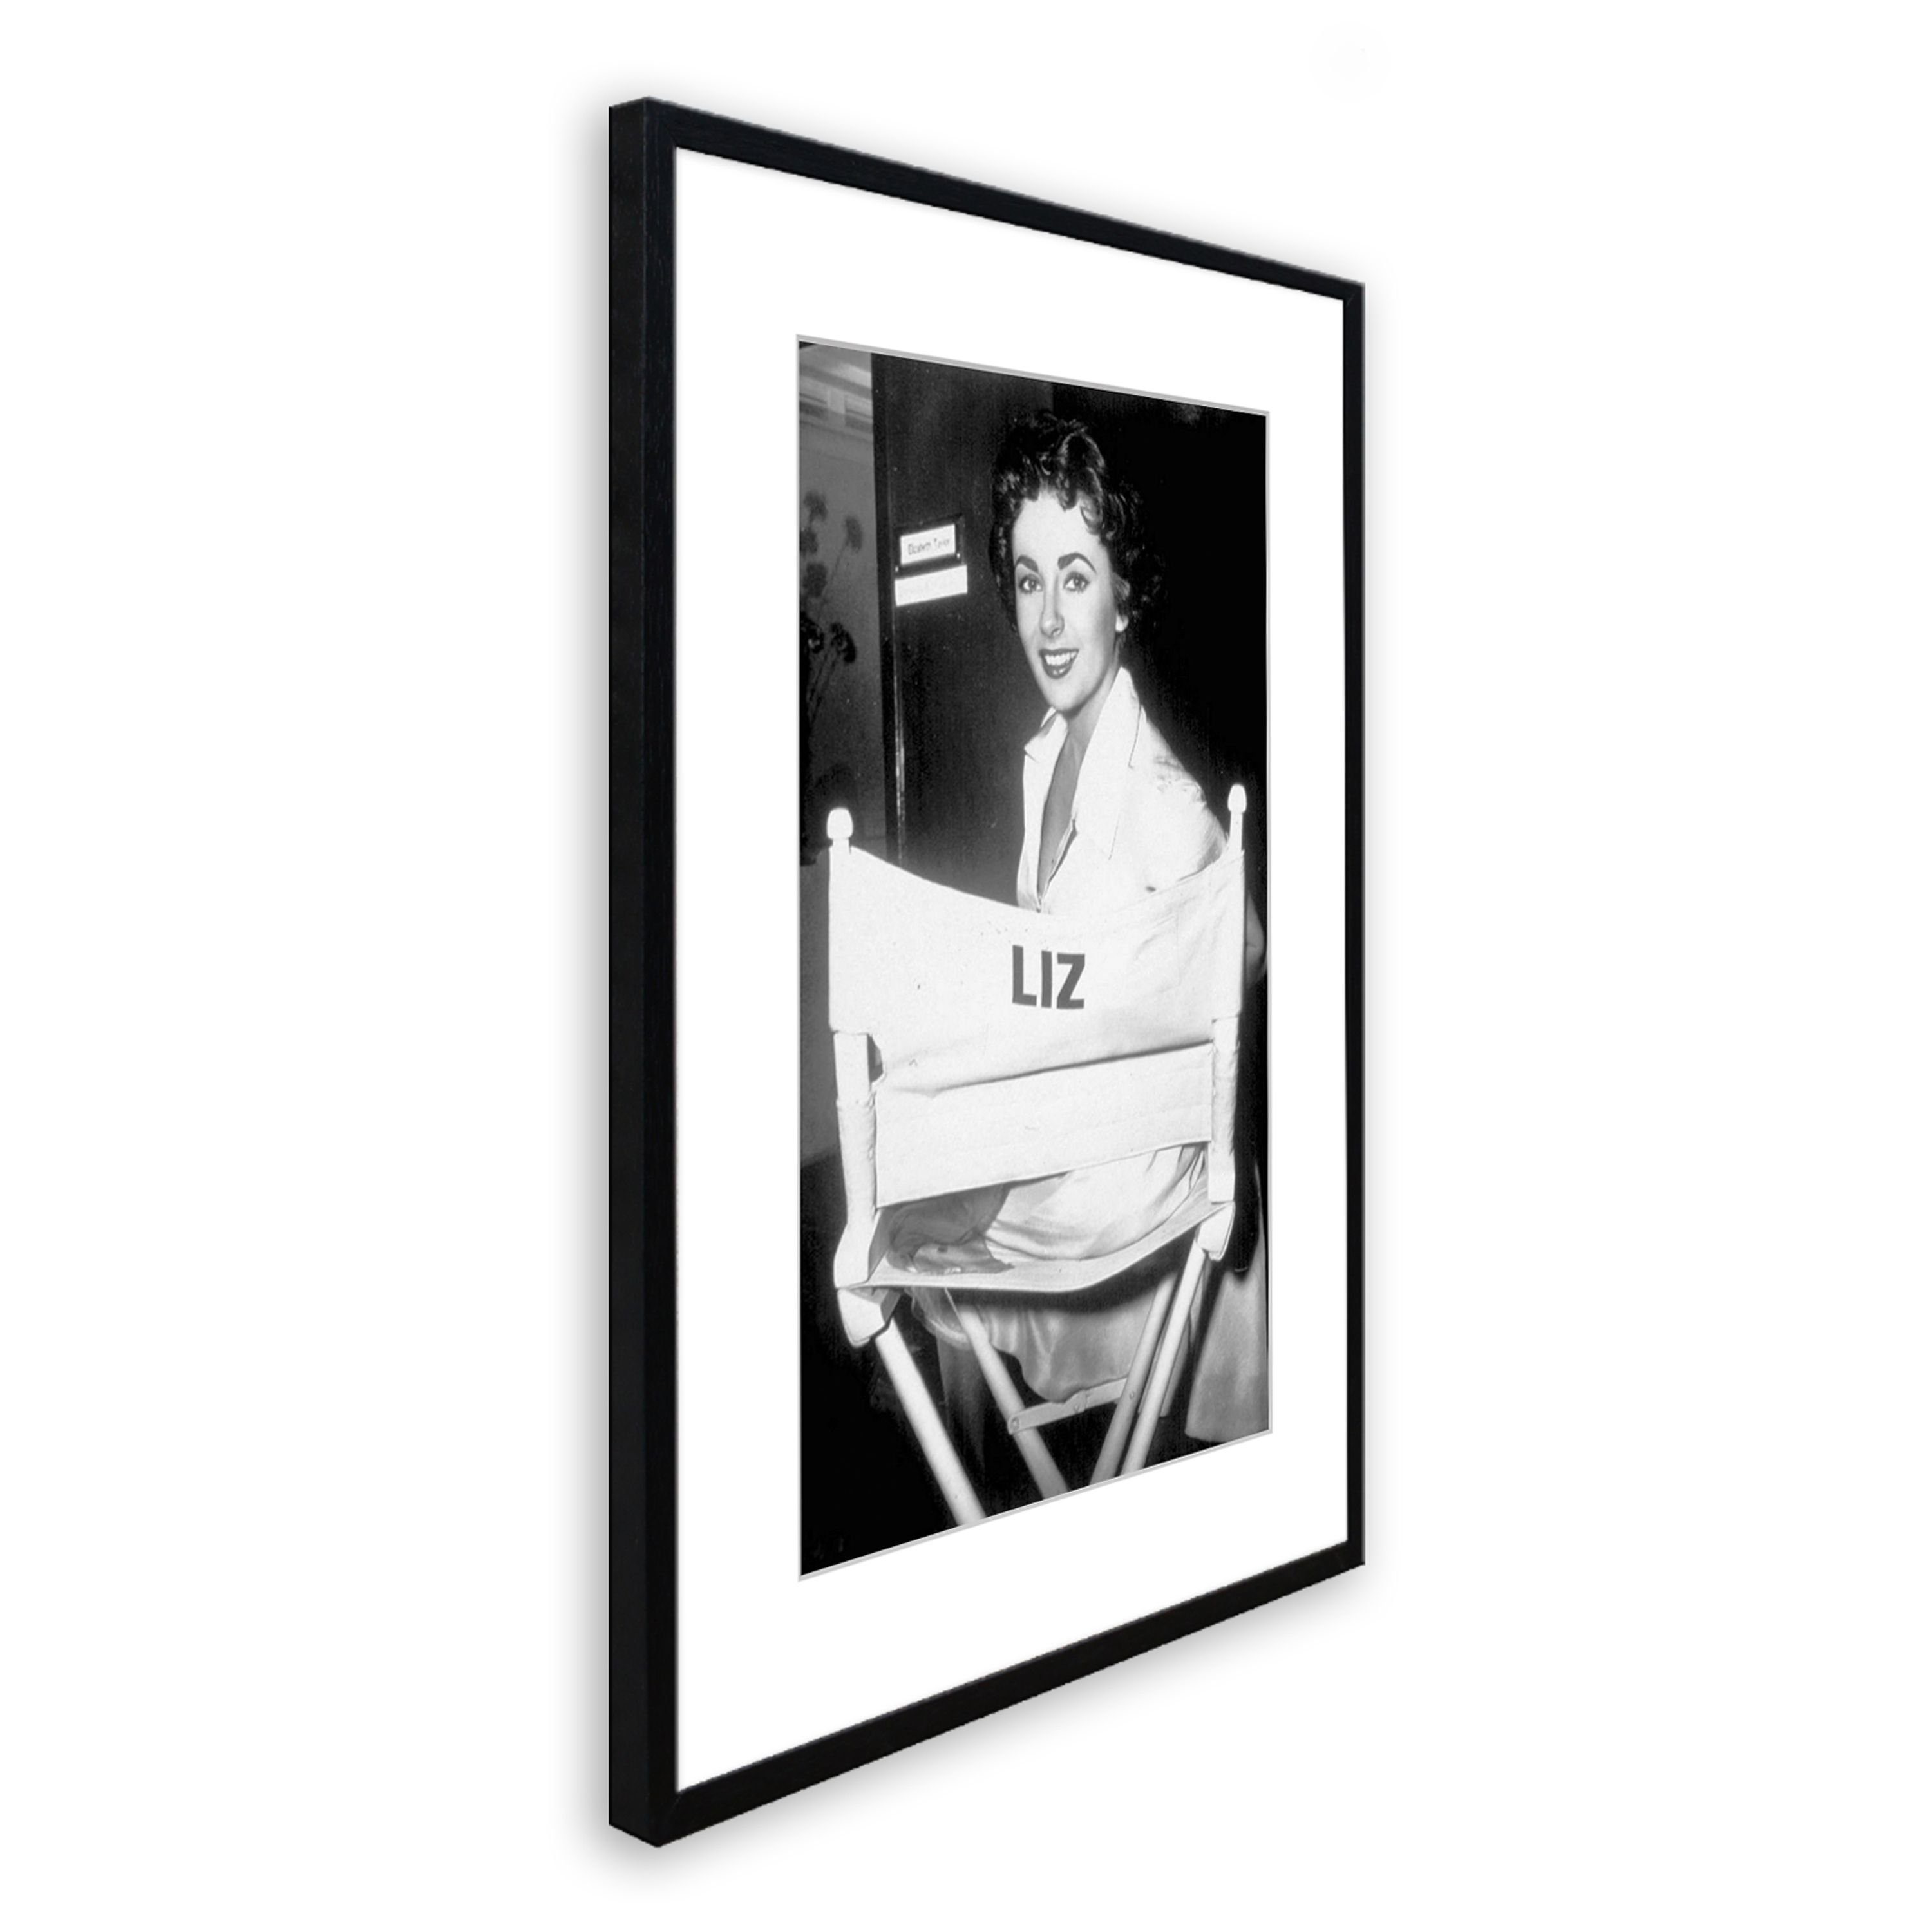 artissimo Bild mit Rahmen Taylor, schwarz-weiß Bild Taylor Elizabeth mit Rahmen gerahmt Poster Film-Star: 51x71cm / Elizabeth